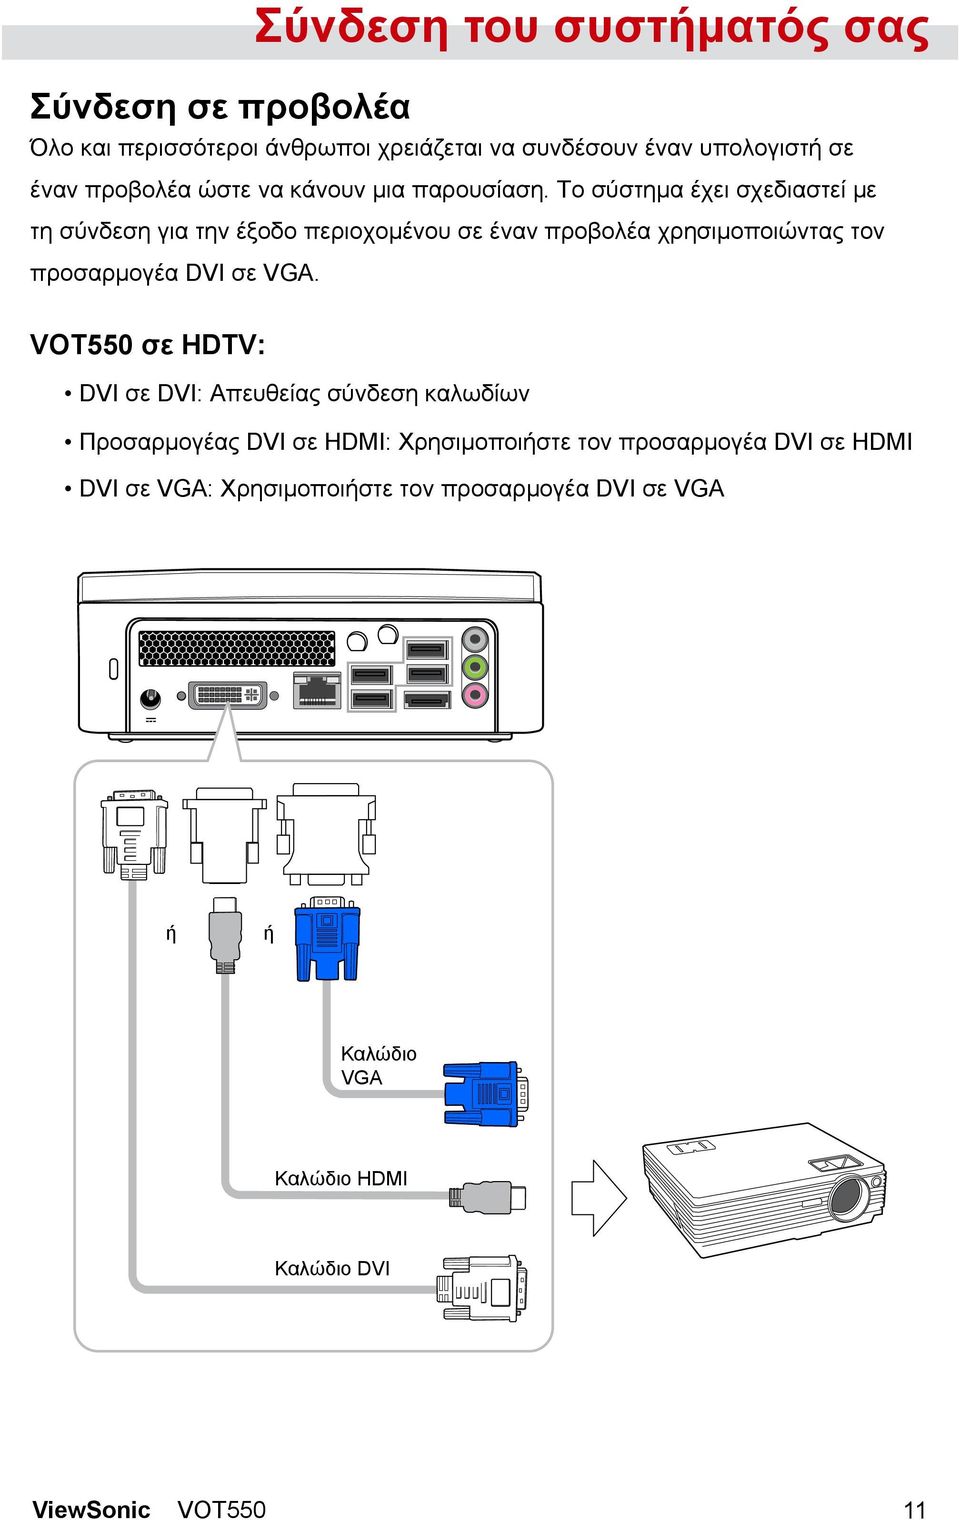 Το σύστημα έχει σχεδιαστεί με τη σύνδεση για την έξοδο περιοχομένου σε έναν προβολέα χρησιμοποιώντας τον προσαρμογέα DVI σε VGA.